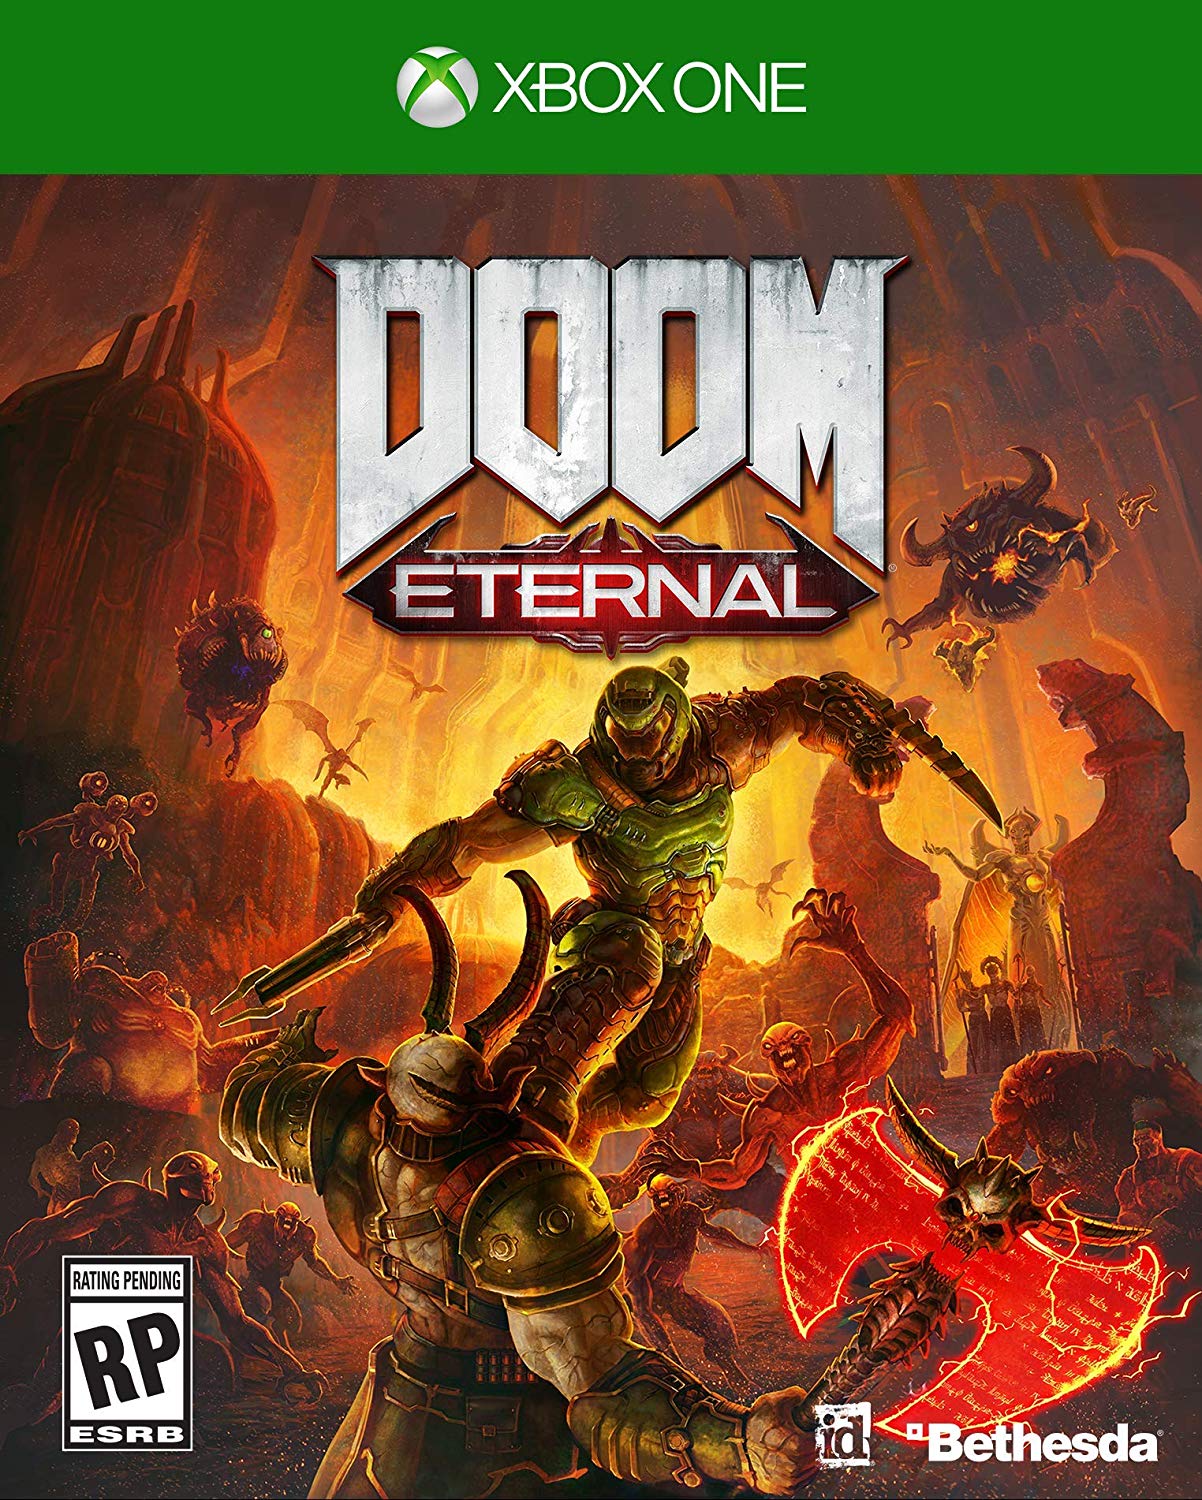 Doom Eternal Xbox One boxart